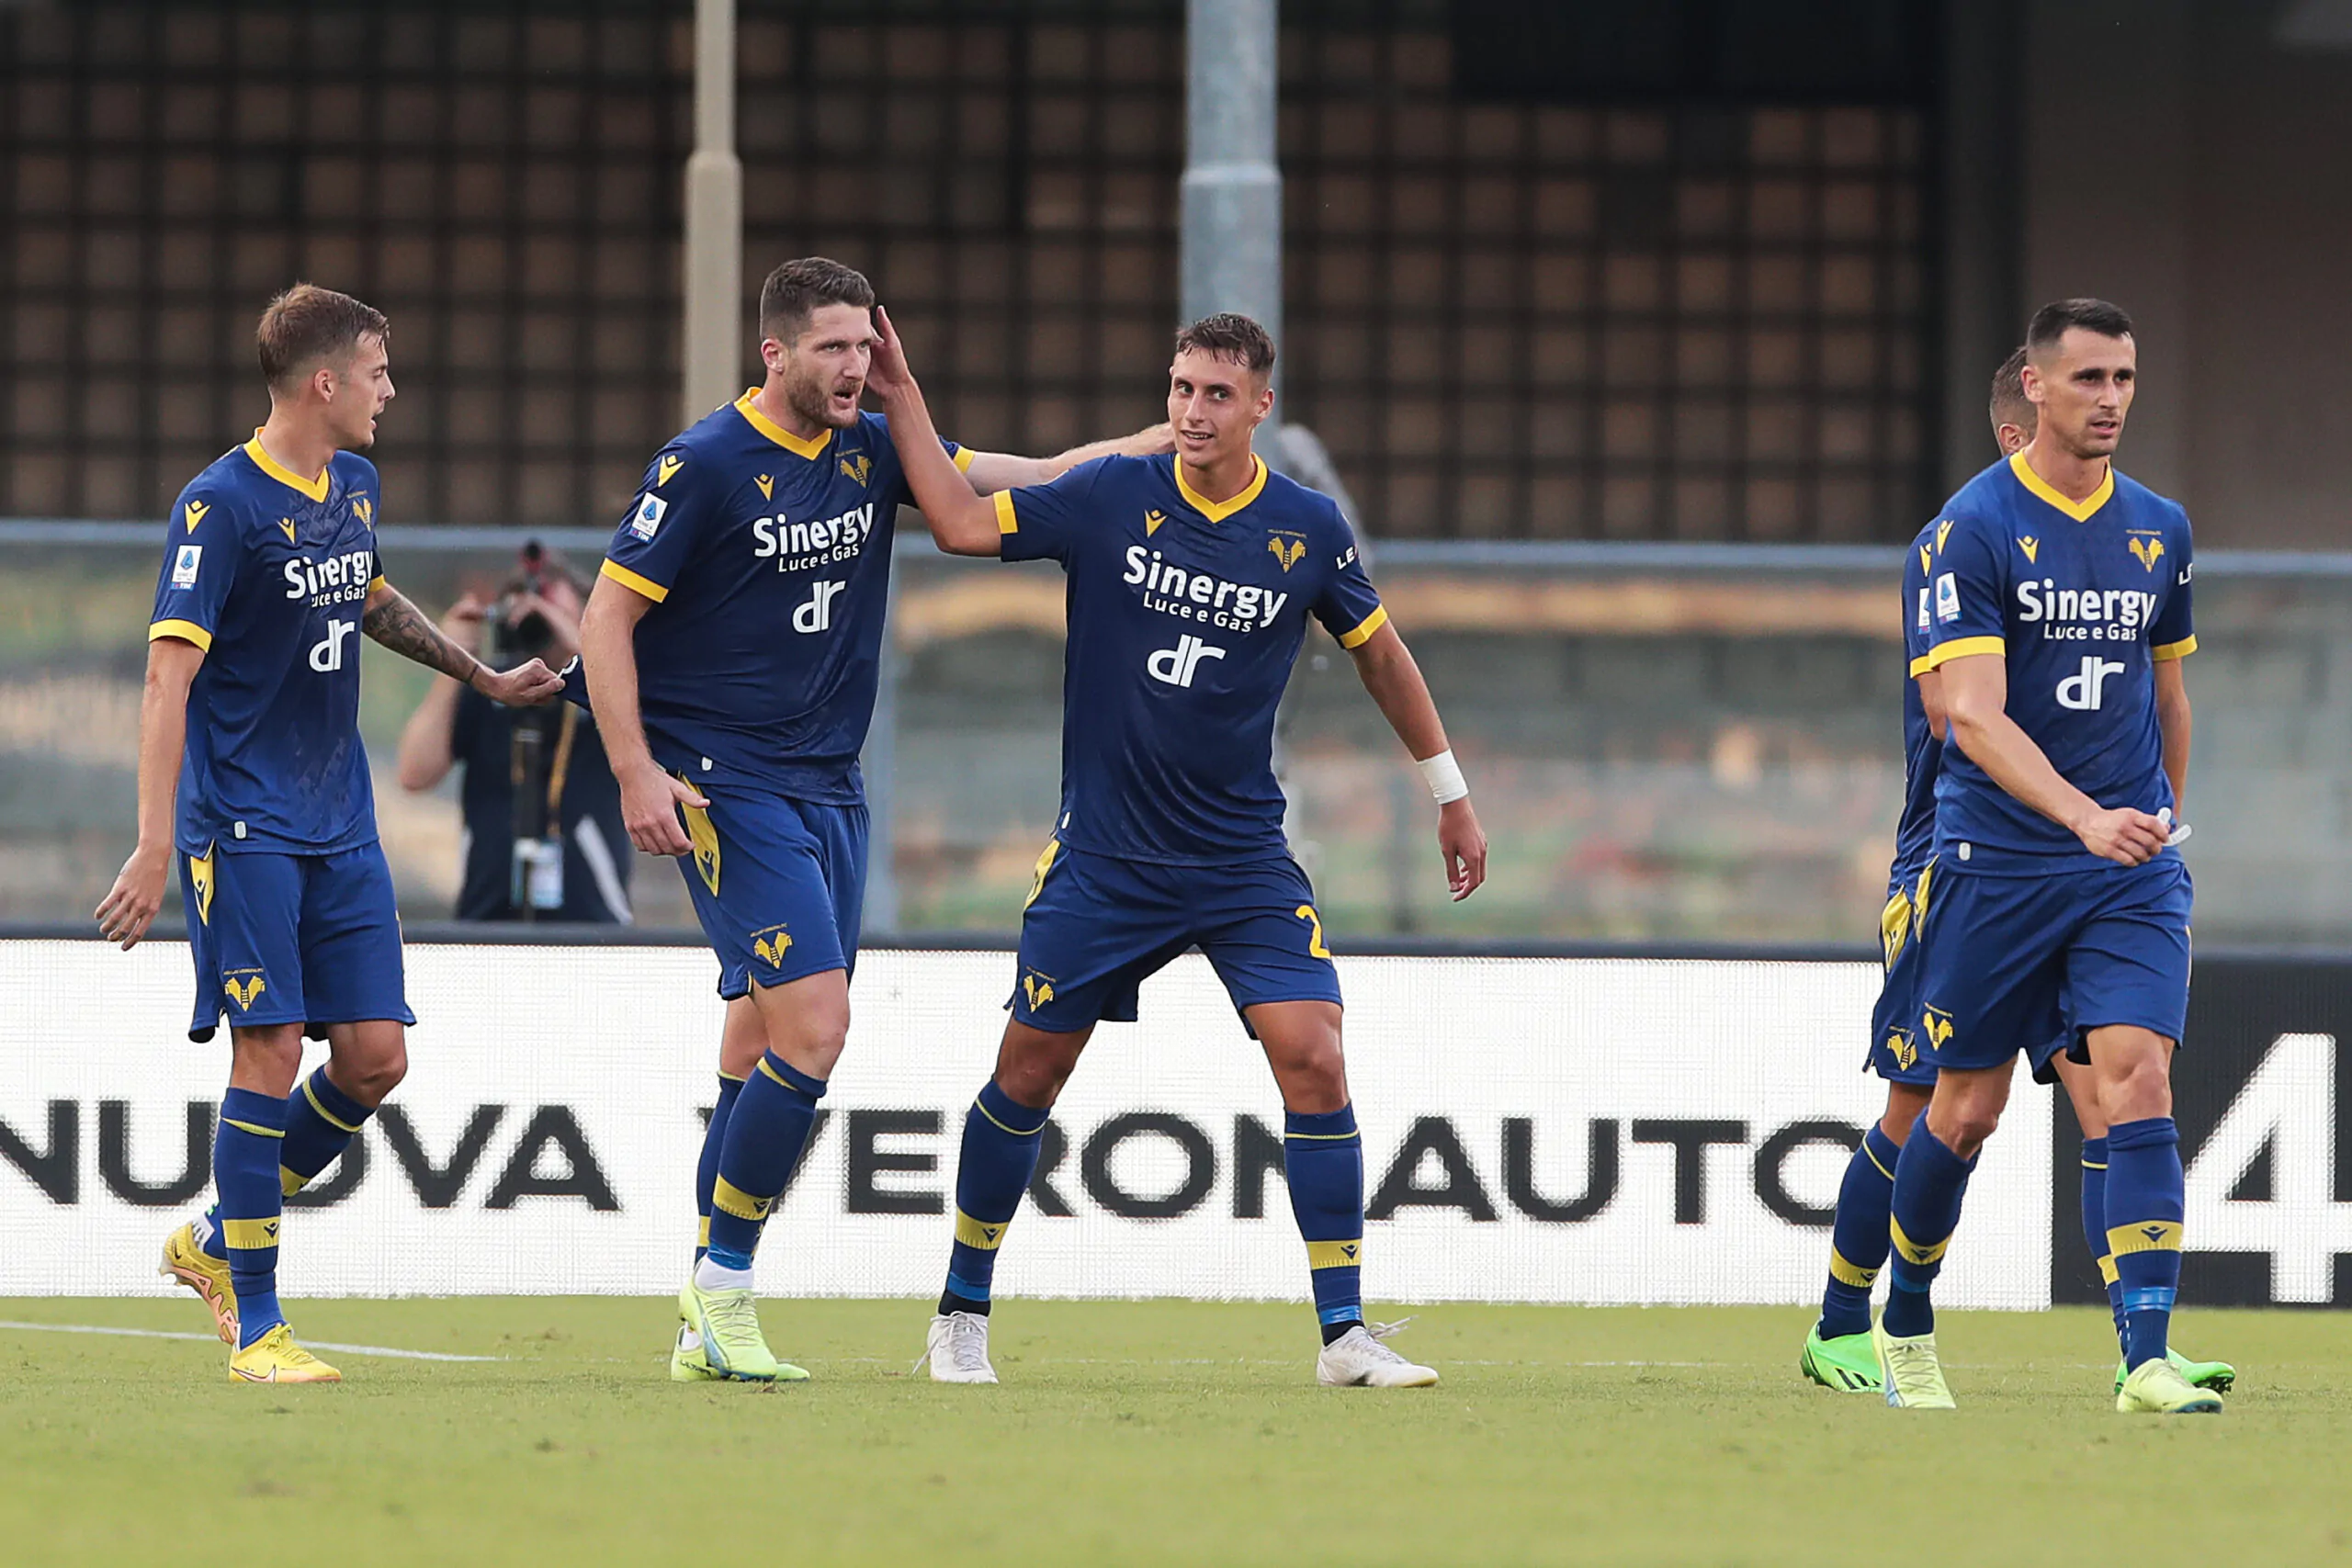 Maxi affare in Serie A: Salernitana e Verona lavorano allo scambio di 4 calciatori!